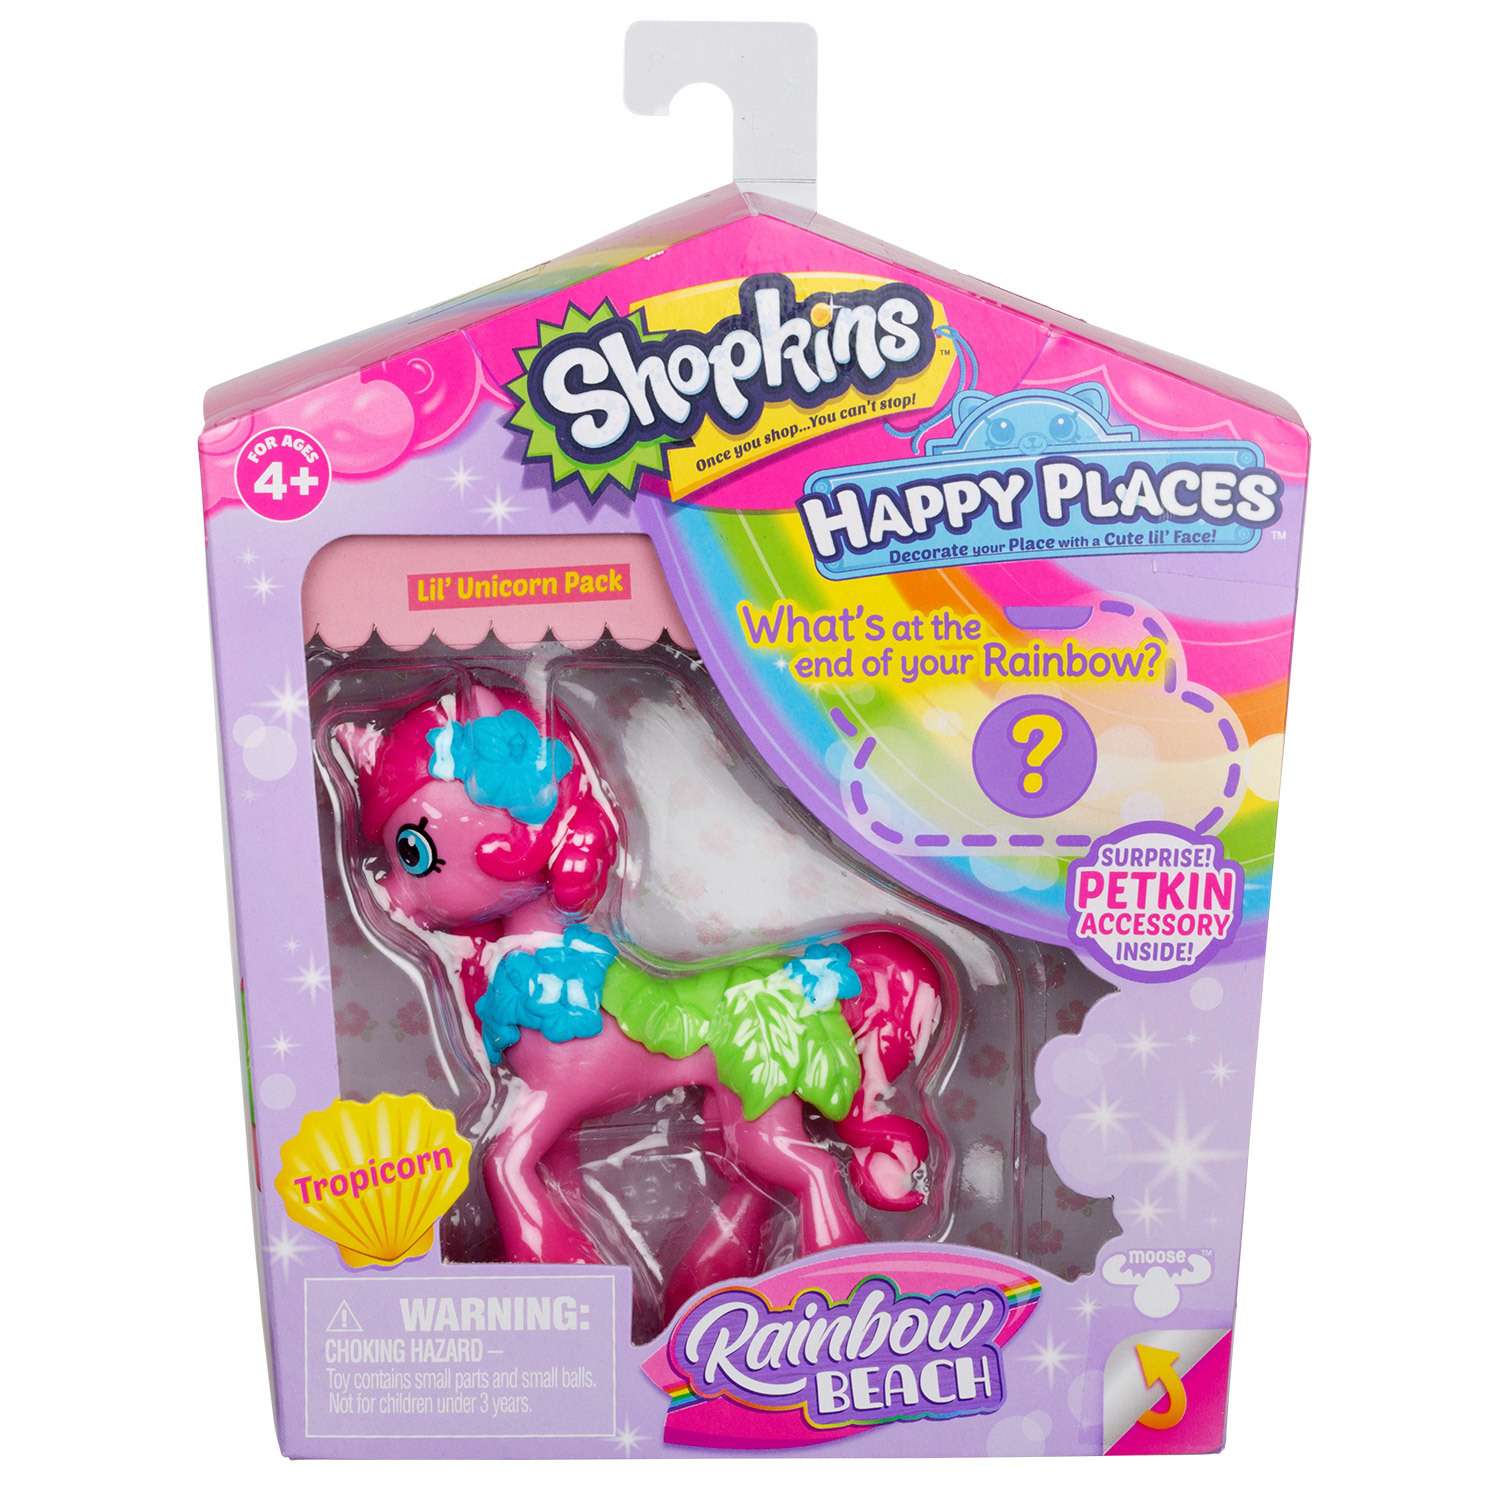 Игрушка Happy Places Shopkins с пони Тропикорн 56847 в непрозрачной упаковке (Сюрприз) - фото 2